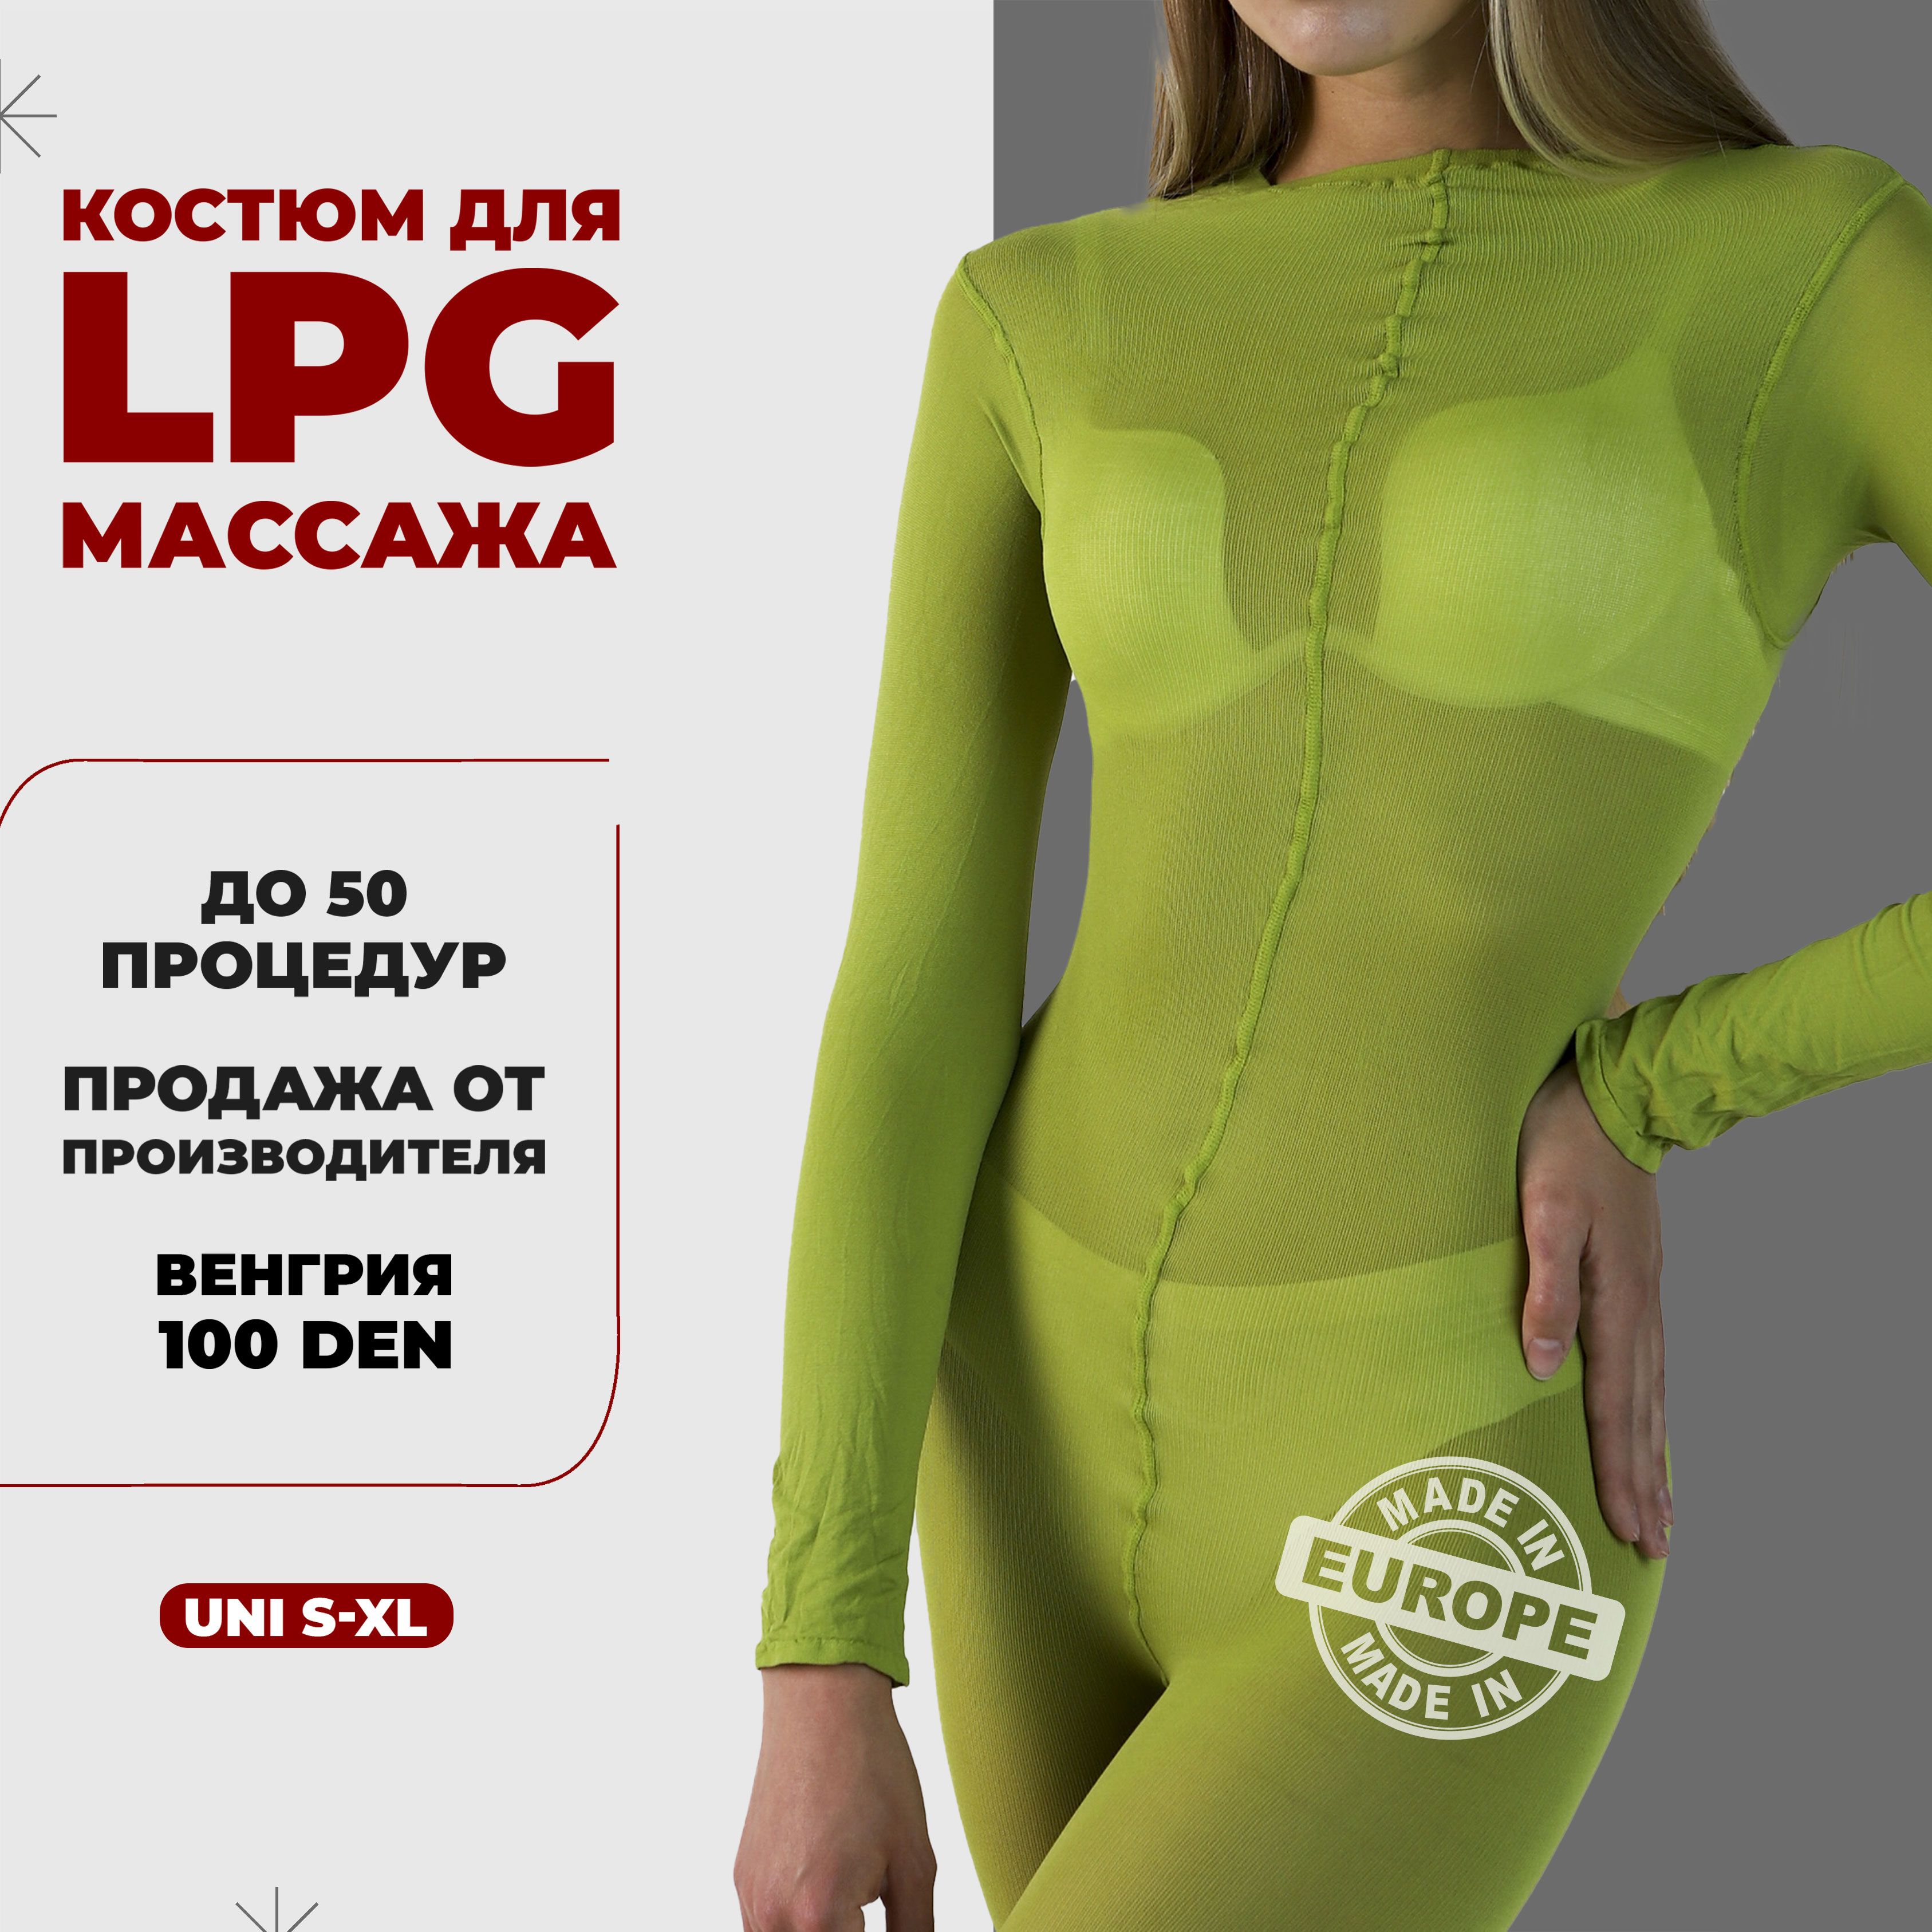 КостюмдляLPGмассажамногоразовый100денВенгрияразмеруниверсальныйS-XL(42-48)цветзеленый